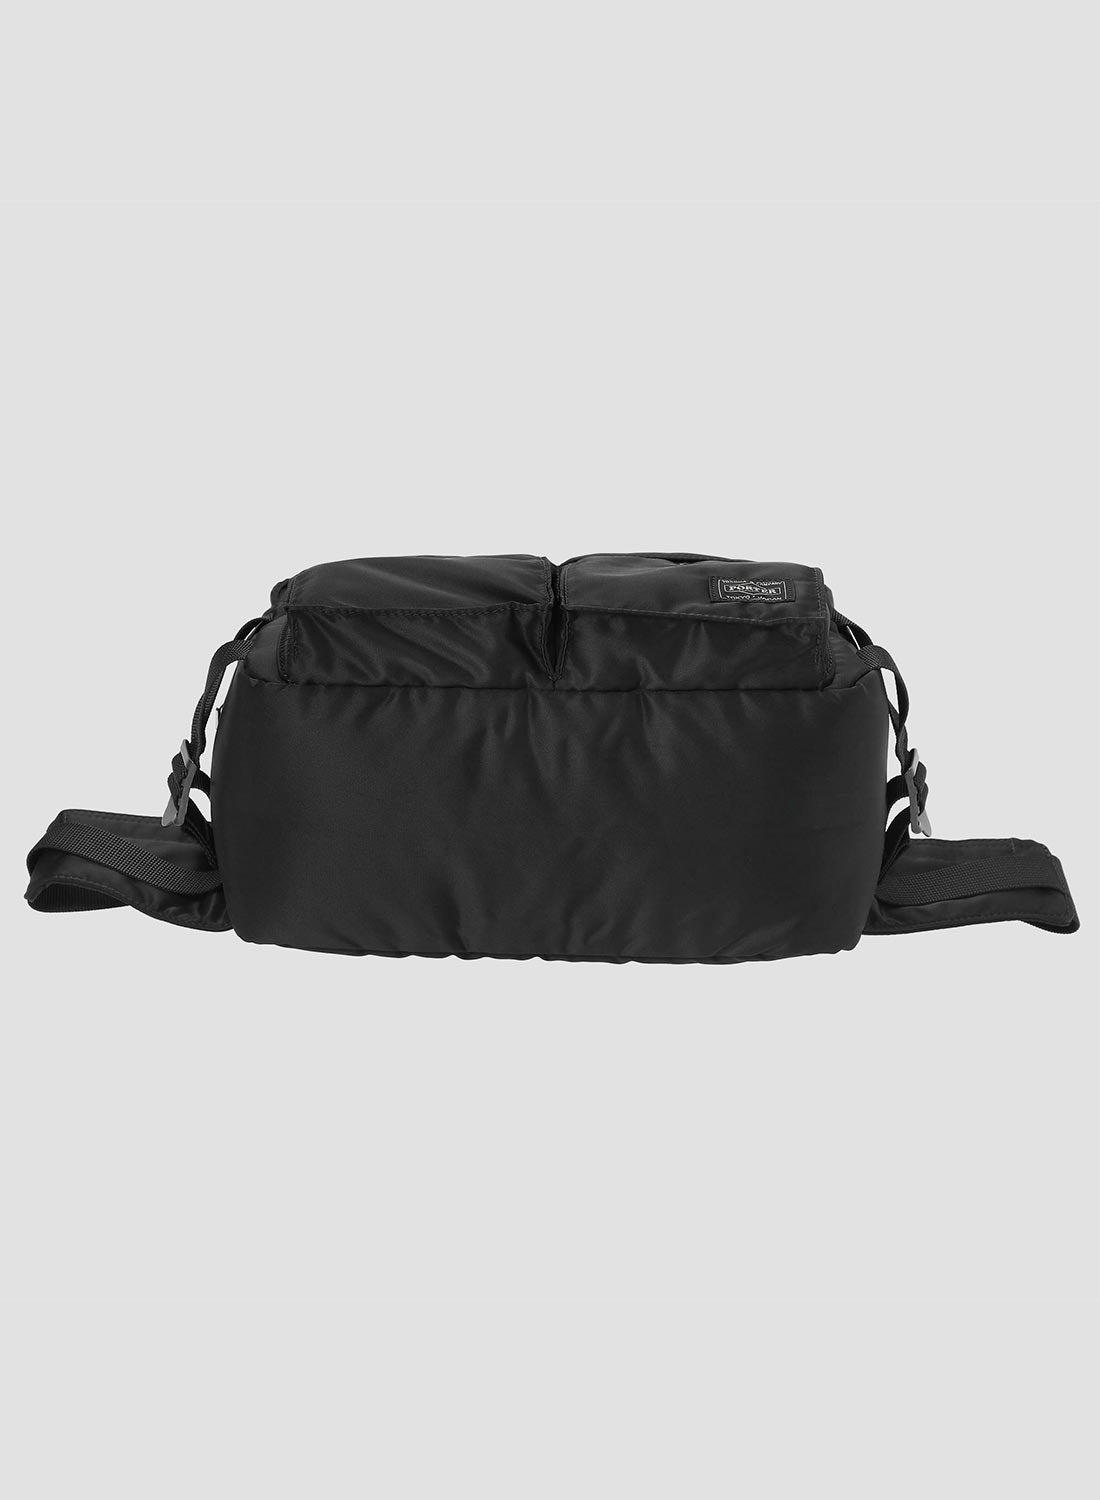 Porter-Yoshida & Co Tanker Waist Bag in Black - 6